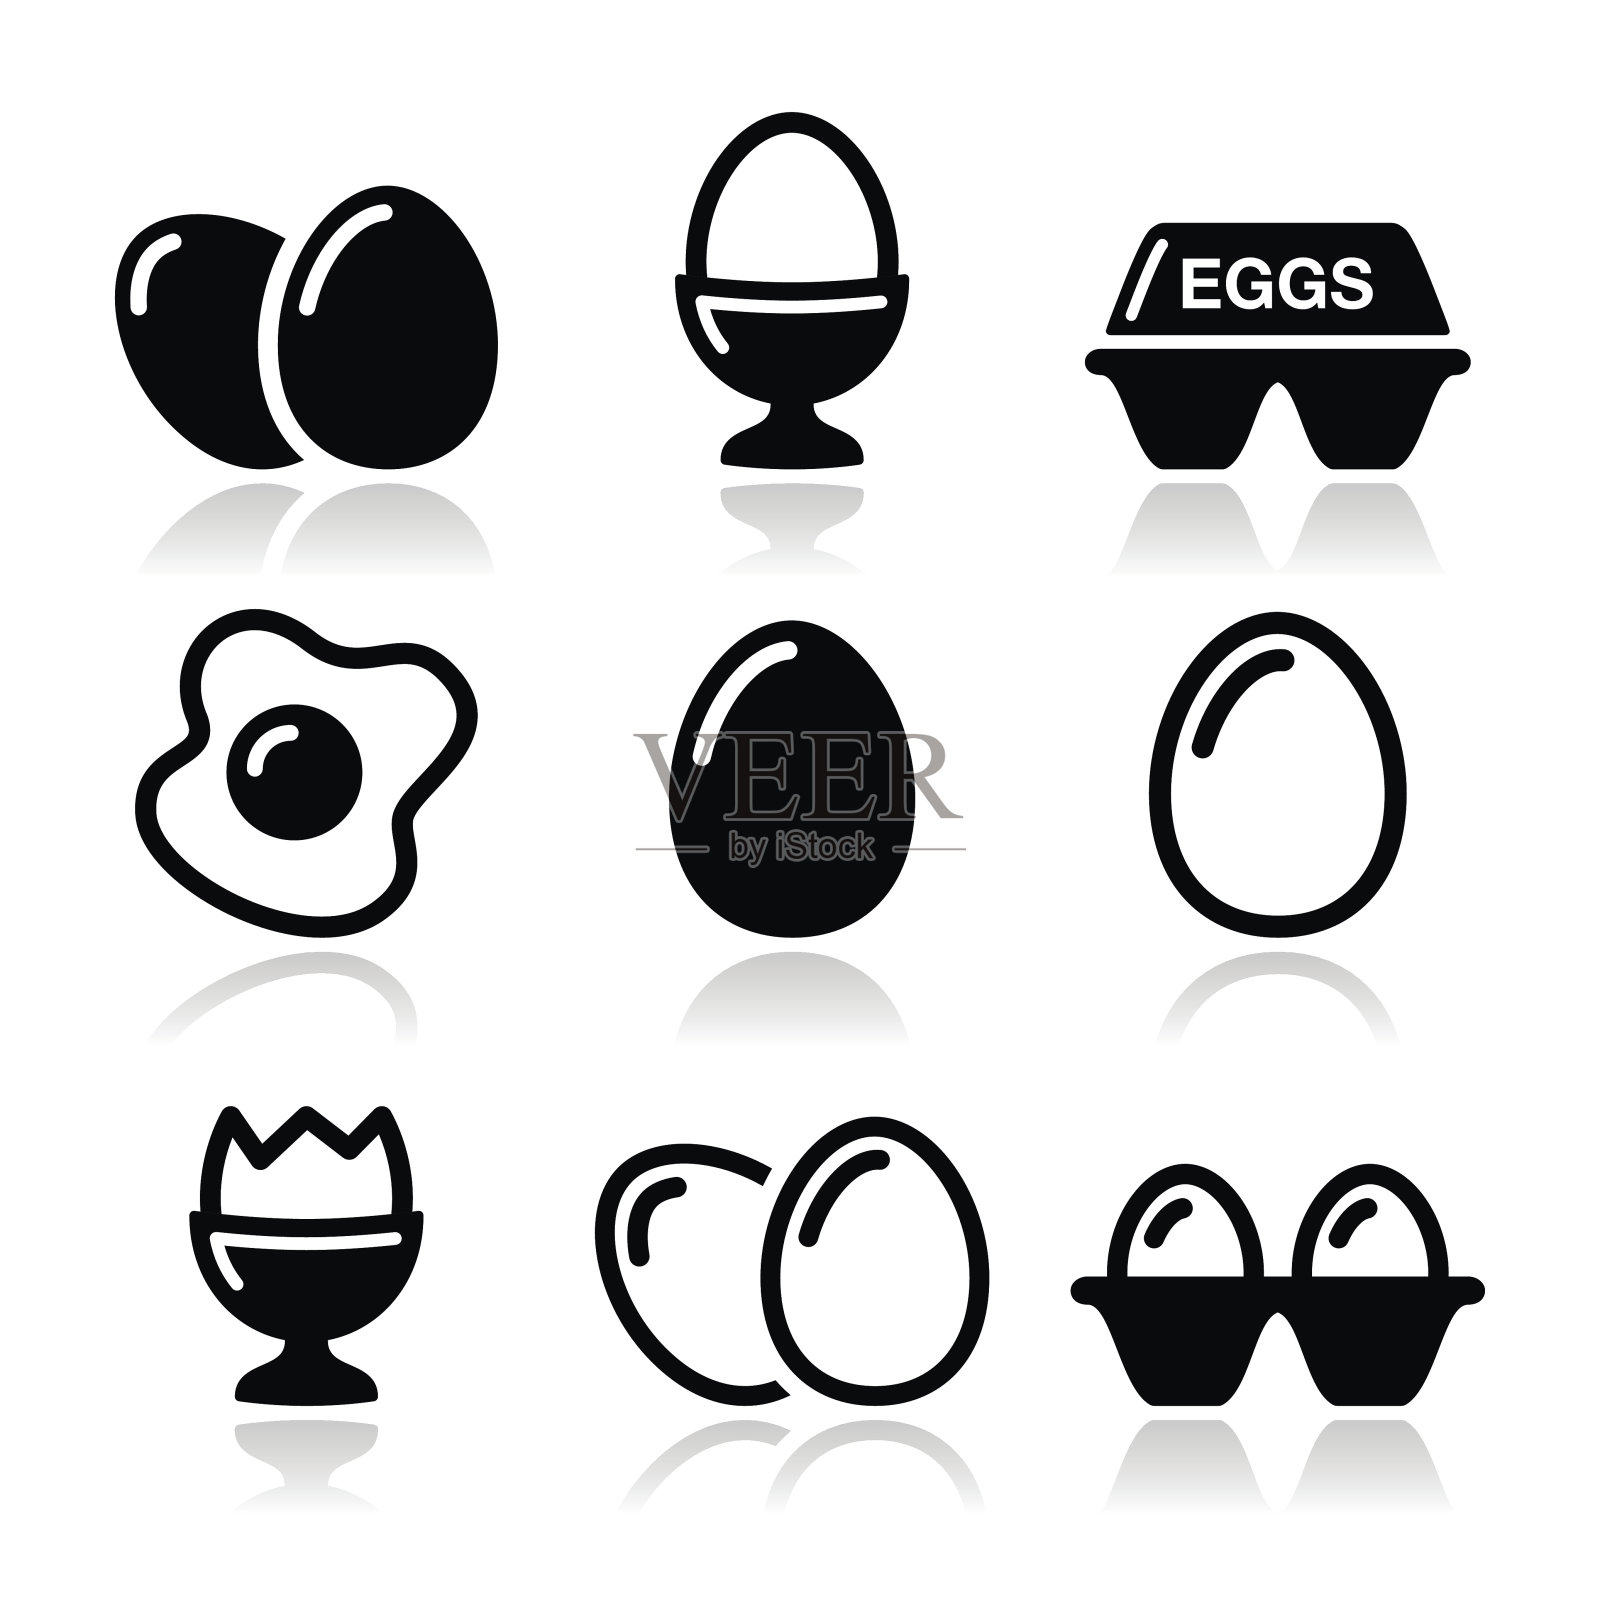 蛋，煎蛋，蛋盒图标集图标素材